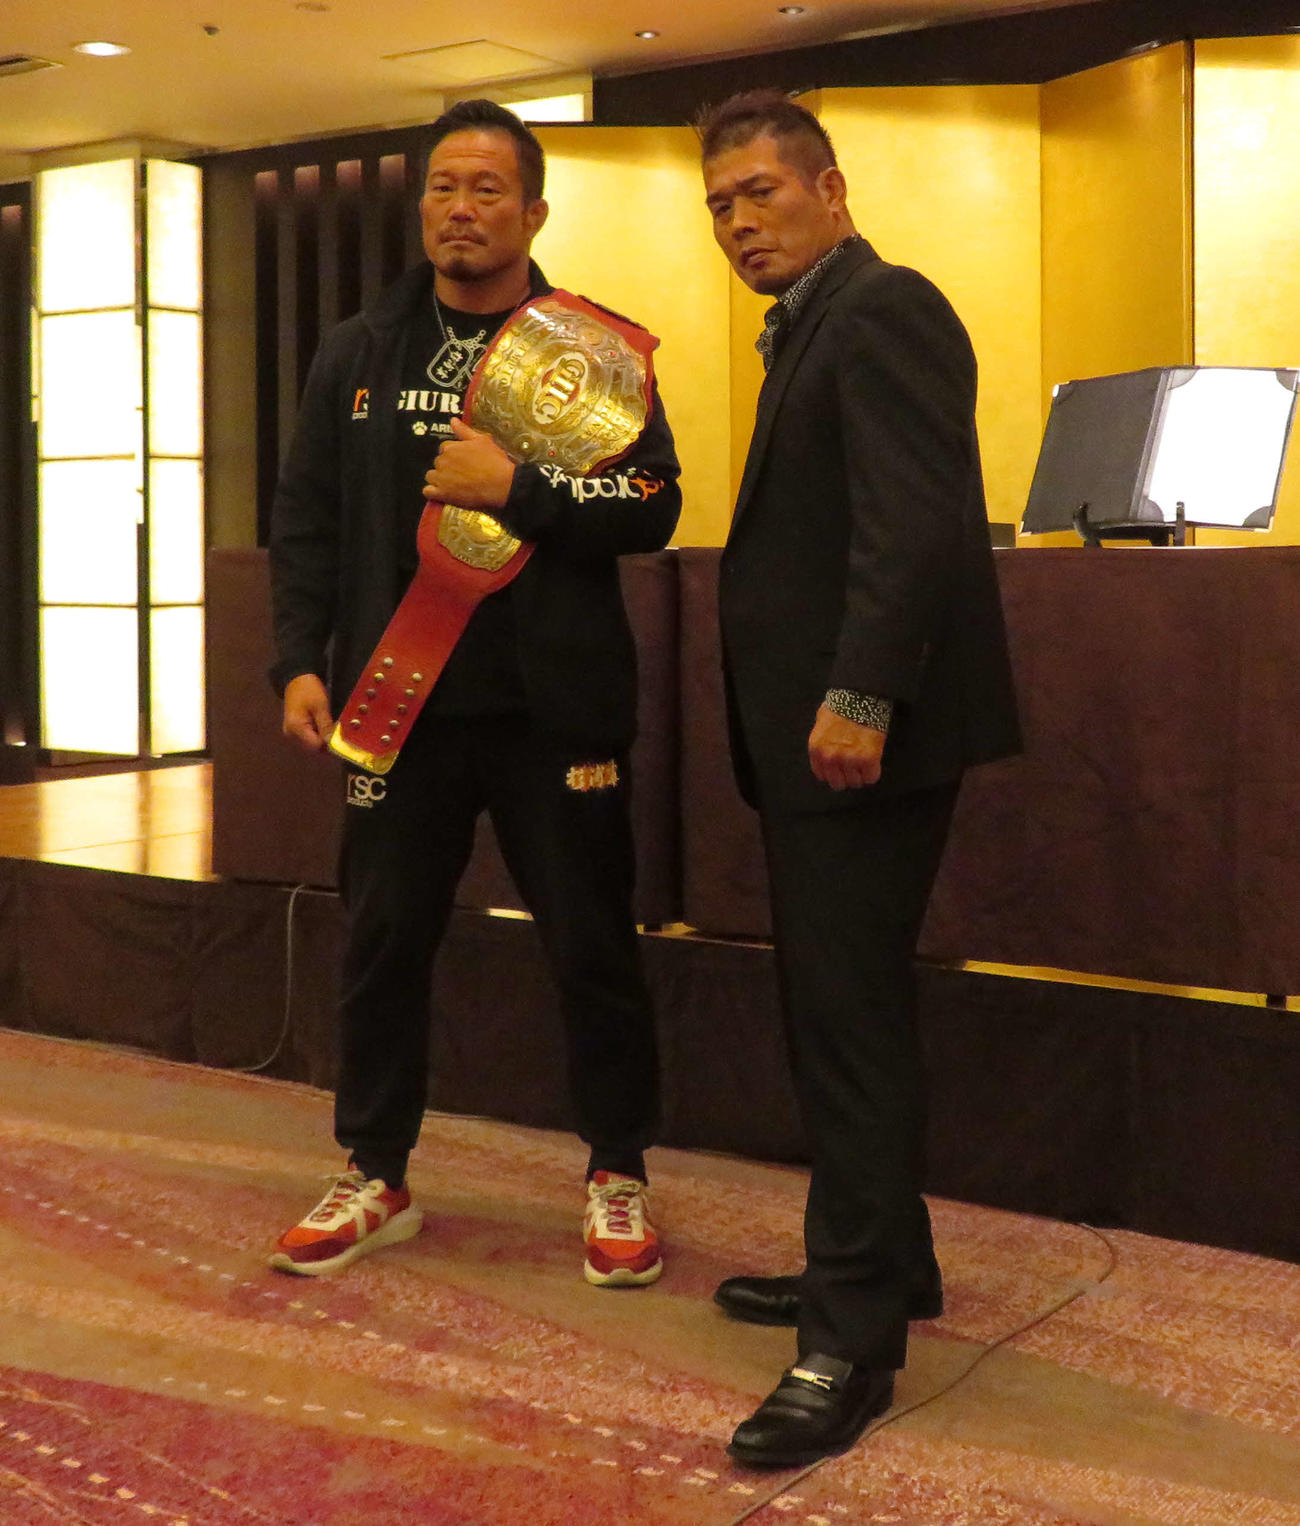 28日のプロレスリング・ノア熊本大会でGHCナショナル選手権試合を行う王者・杉浦貴（左）と挑戦者・望月成晃（撮影・松熊洋介）